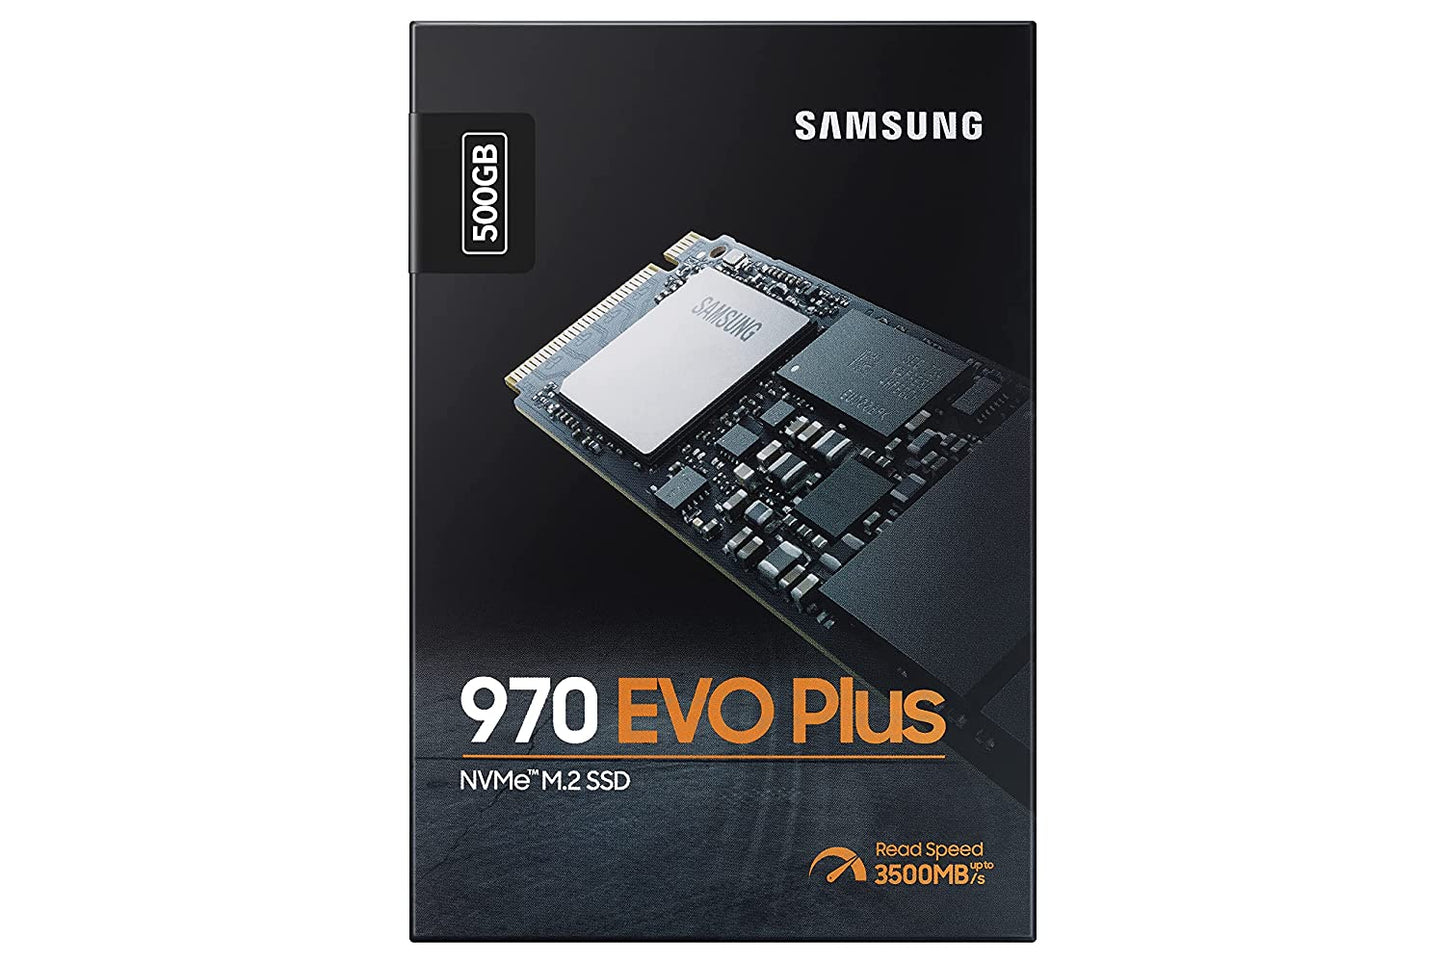 SSD-500-GB-SAMSUNG-970-EVO-PLUS-NVME-M.2